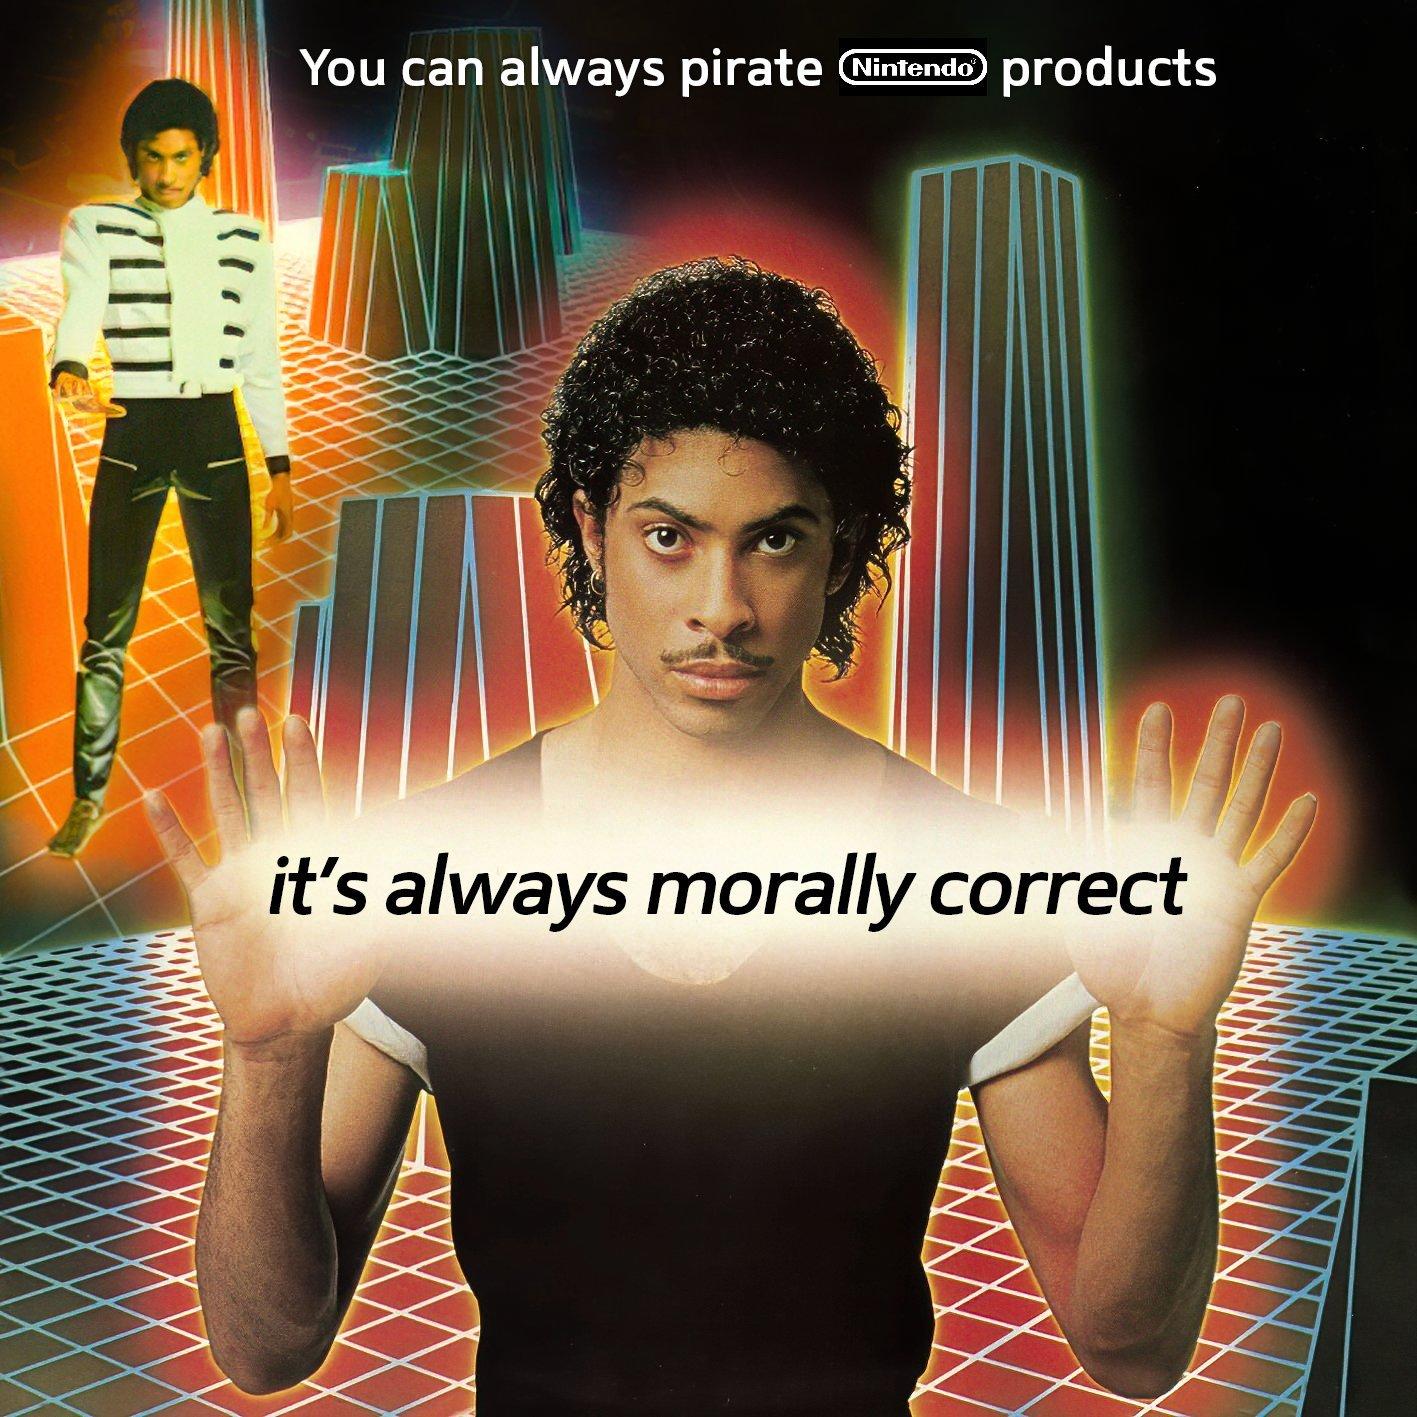 Meme donde aparece el artista Prince mirando directamente al espectador y dice que siempre es moralmente correcto piratear juegos de Nintendo.